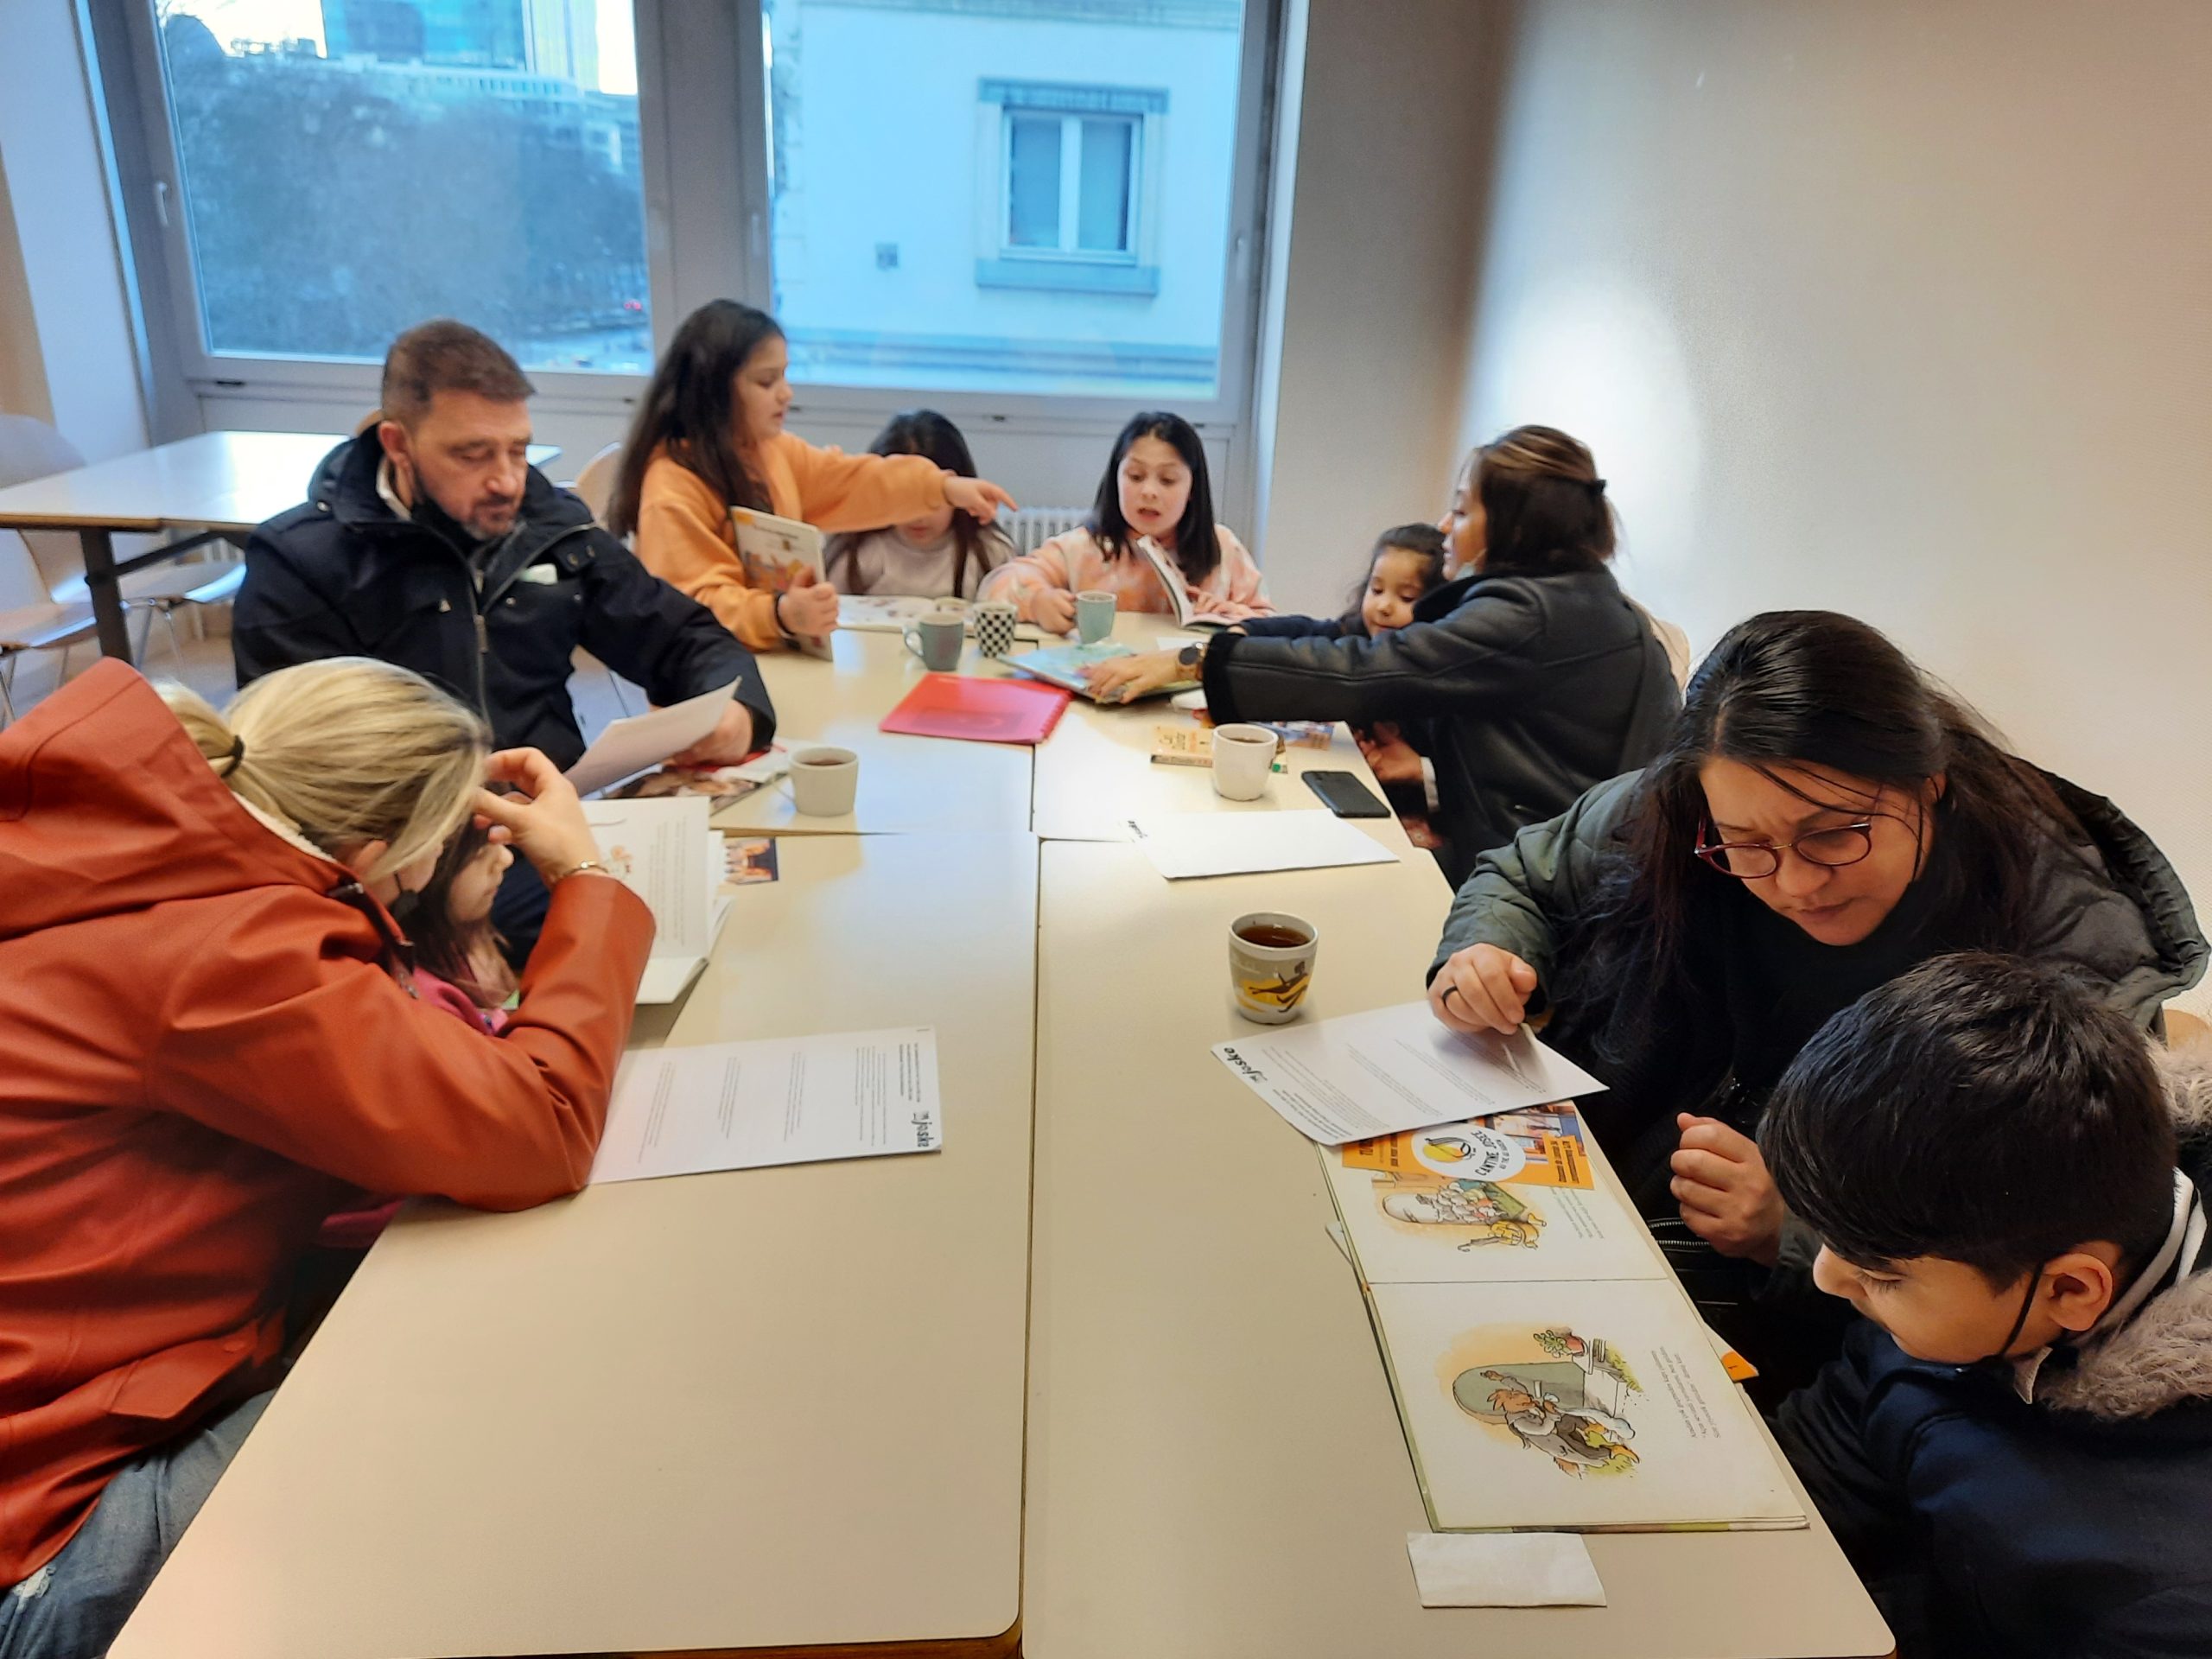 Bruksel Türkçe öğrencileri Kütüphane ziyareti